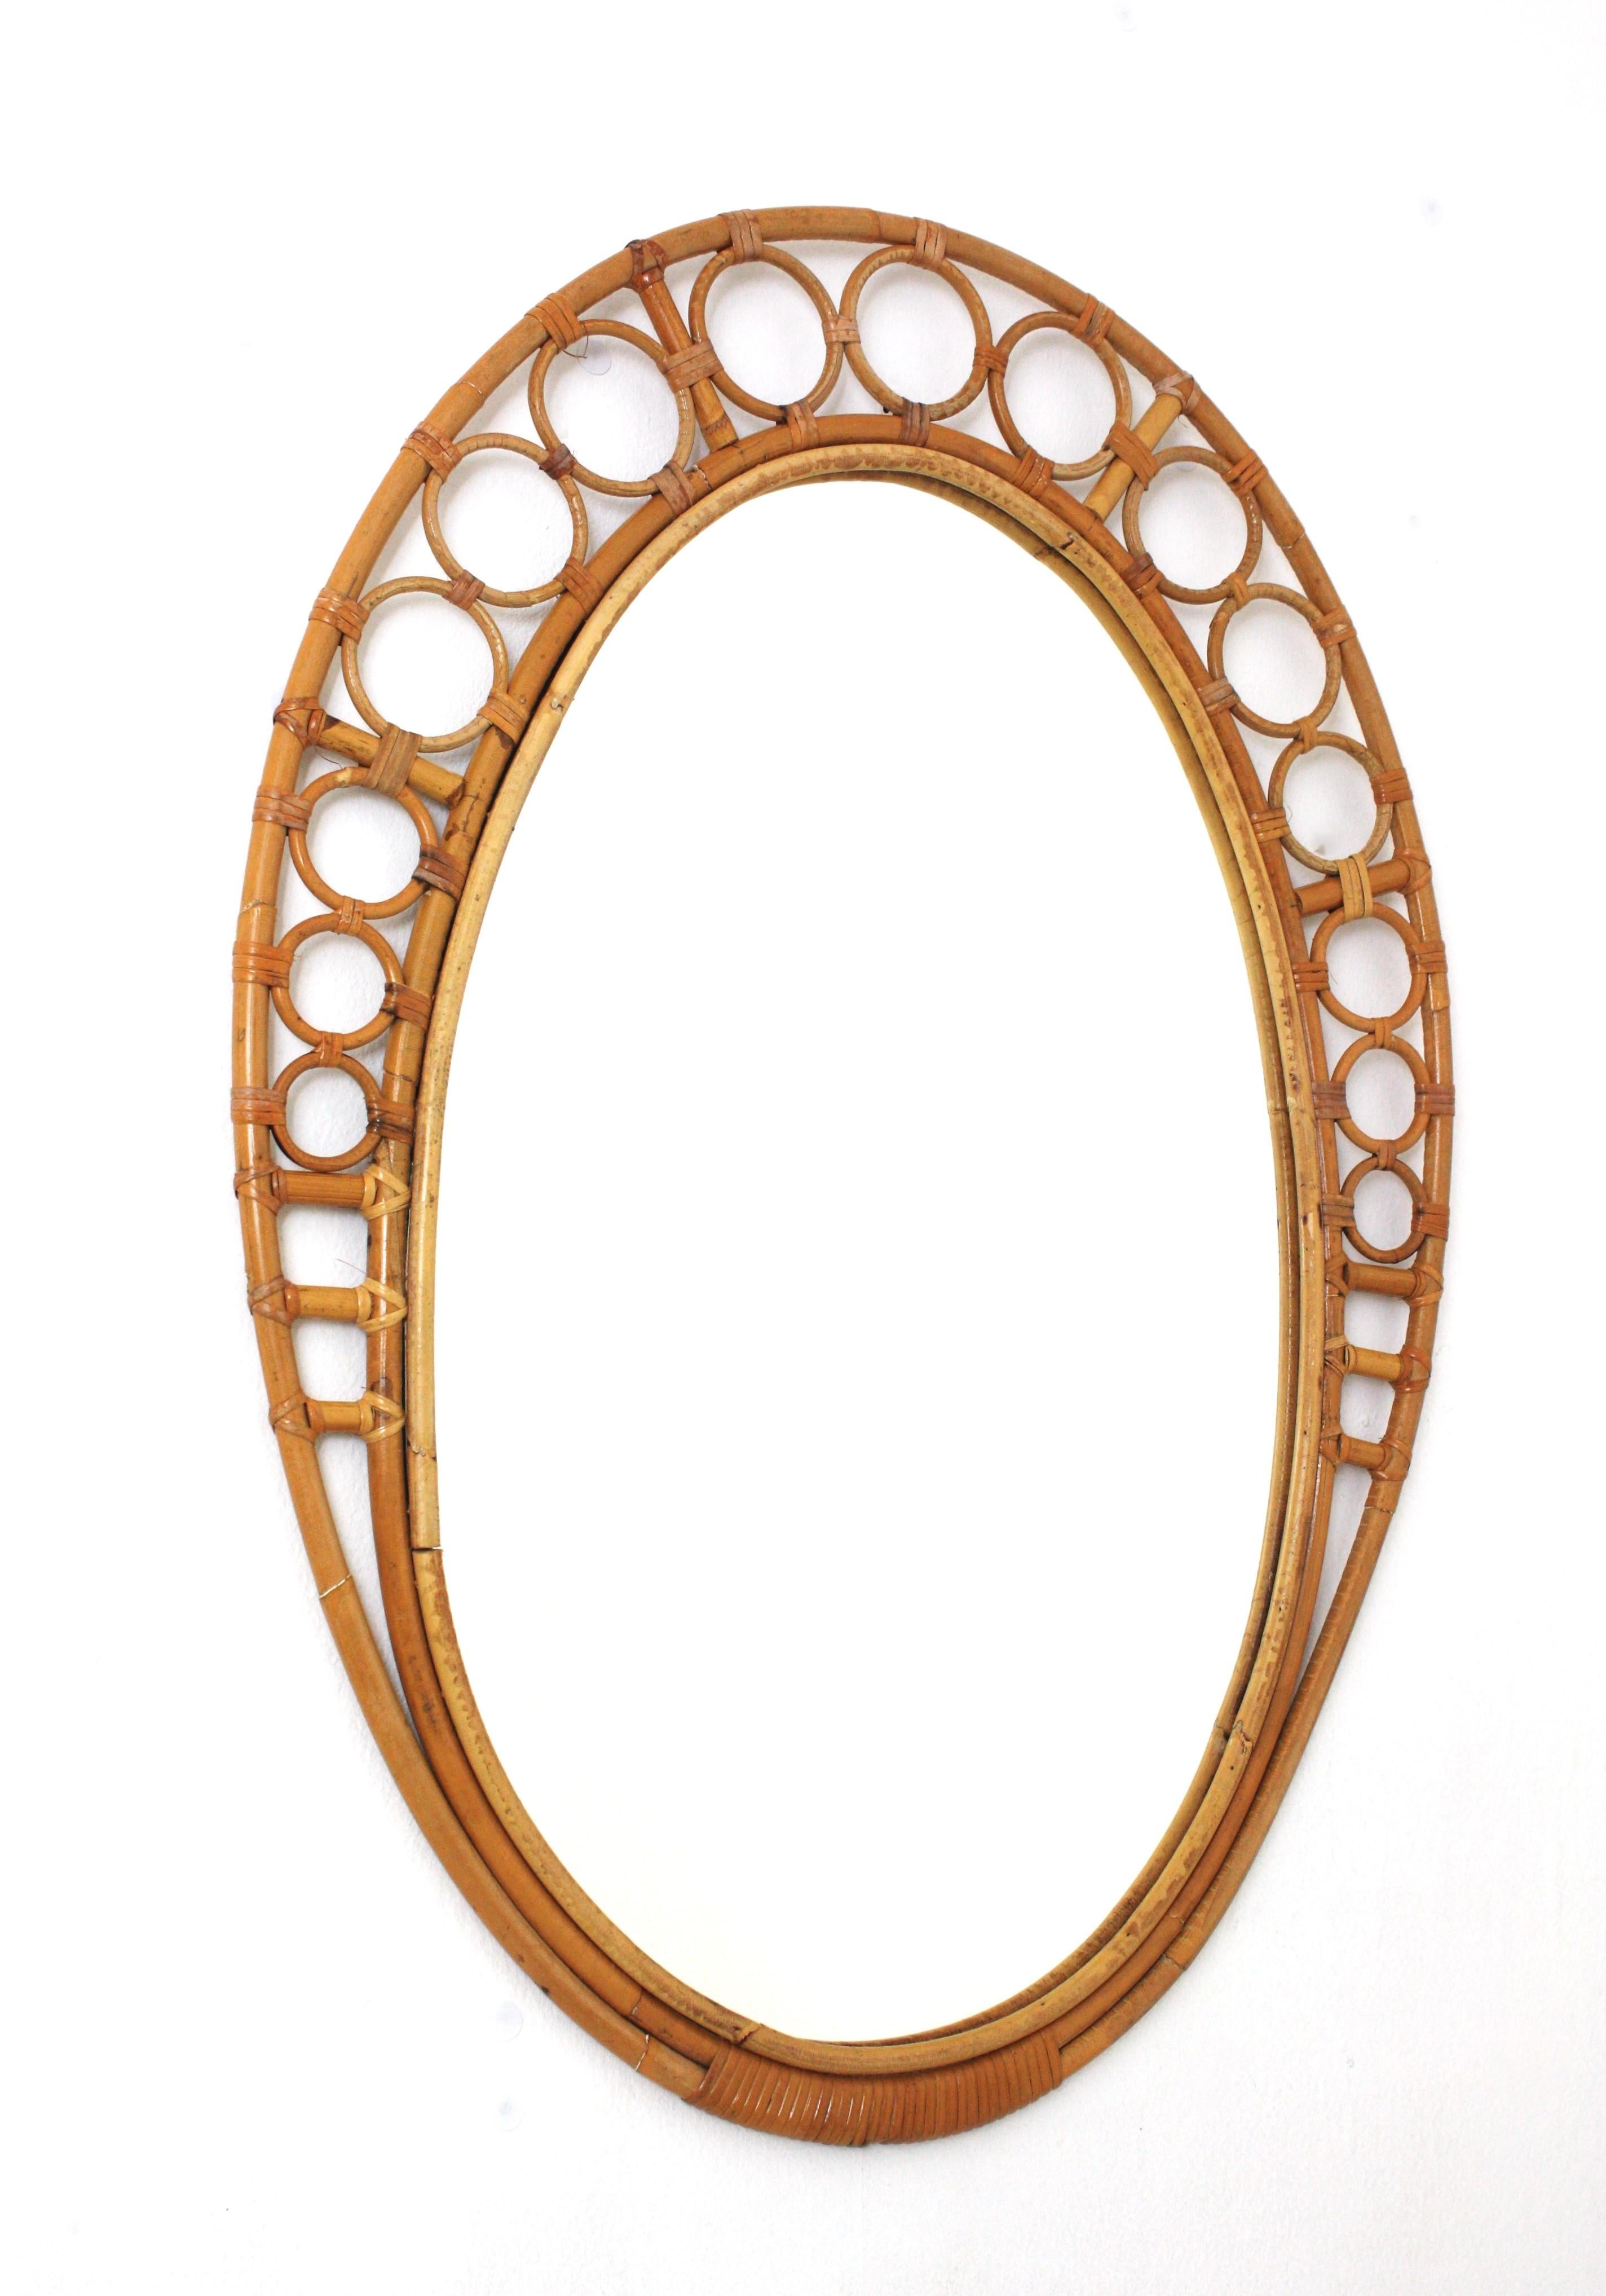 Großer ovaler Rattan-Bambus-Spiegel aus der Mitte des Jahrhunderts. Spanien, 1960er Jahre.
Dieser Wandspiegel verfügt über ein ovales Spiegelglas, das von einem Bambus-/Rattanrahmen mit Ring- oder Kreisdetails auf der Oberseite und geflochtenen